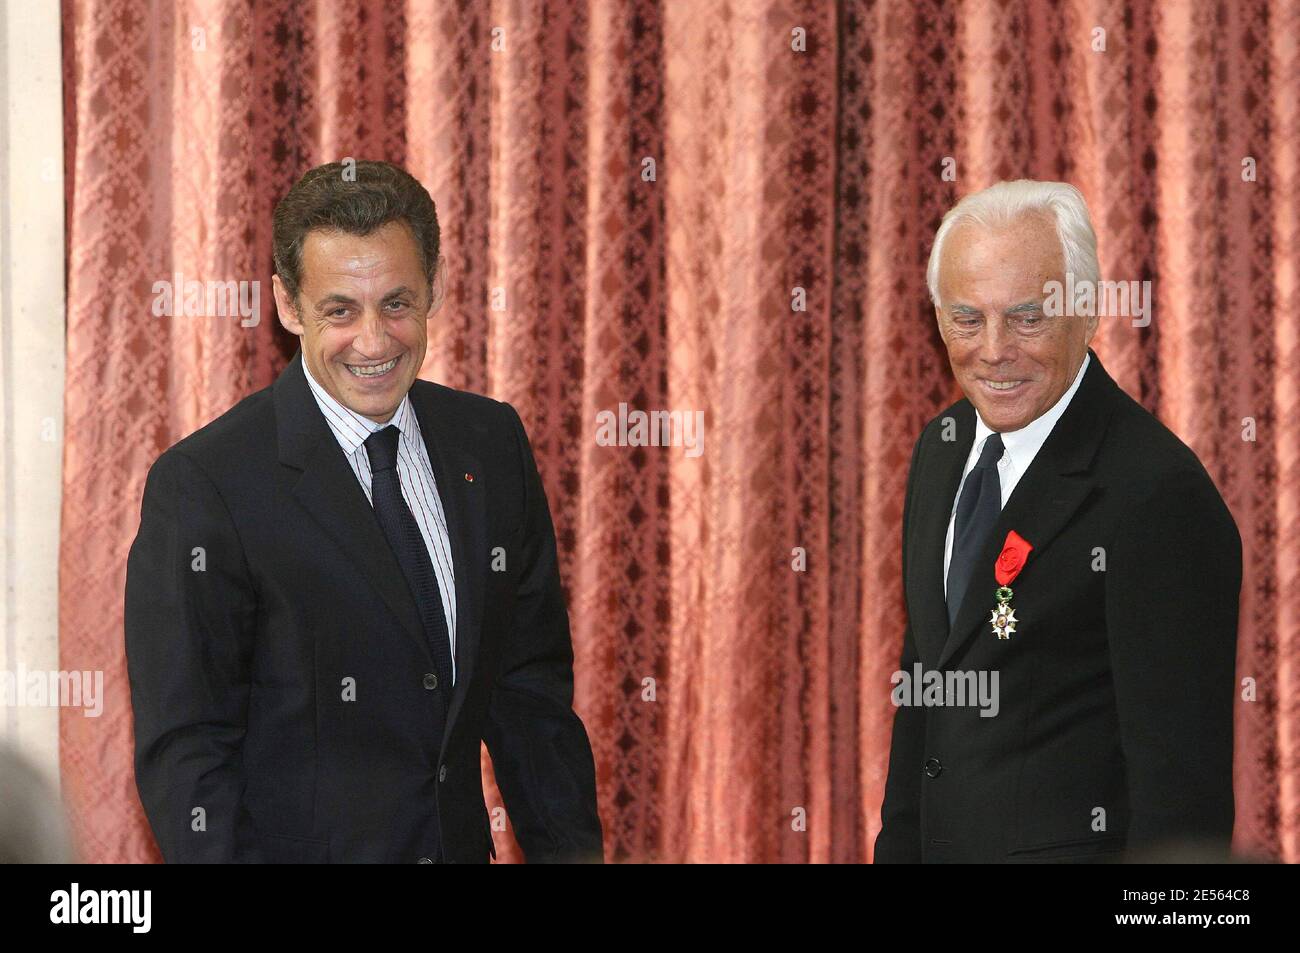 Der französische Präsident Nicolas Sarkozy verleiht dem italienischen Designer Giorgio Armani am 3. Juli 2008 im Elysee-Palast in Paris, Frankreich, die Legion d'Honneur. Die Legion d'Honneur ist Frankreichs höchste Auszeichnung für herausragende Leistungen. Foto von Pool/Villard-Lorenvu/ABACAPRESS.COM Stockfoto